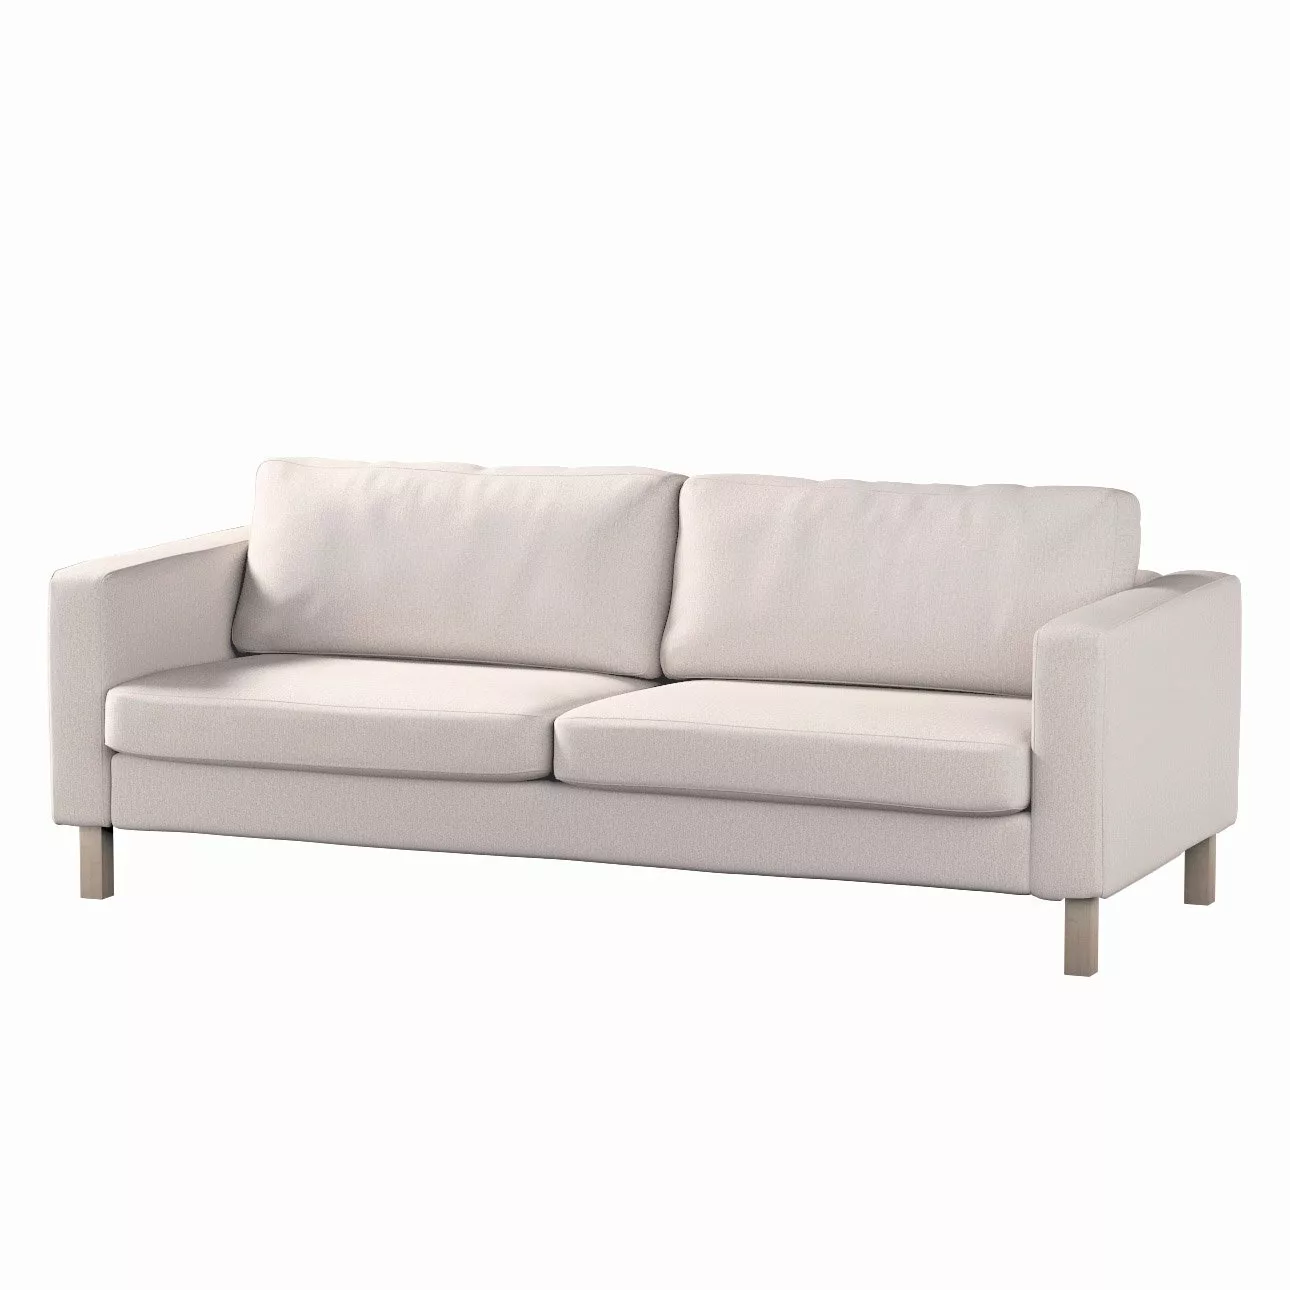 Bezug für Karlstad 3-Sitzer Sofa nicht ausklappbar, kurz, hellbeige, Bezug günstig online kaufen